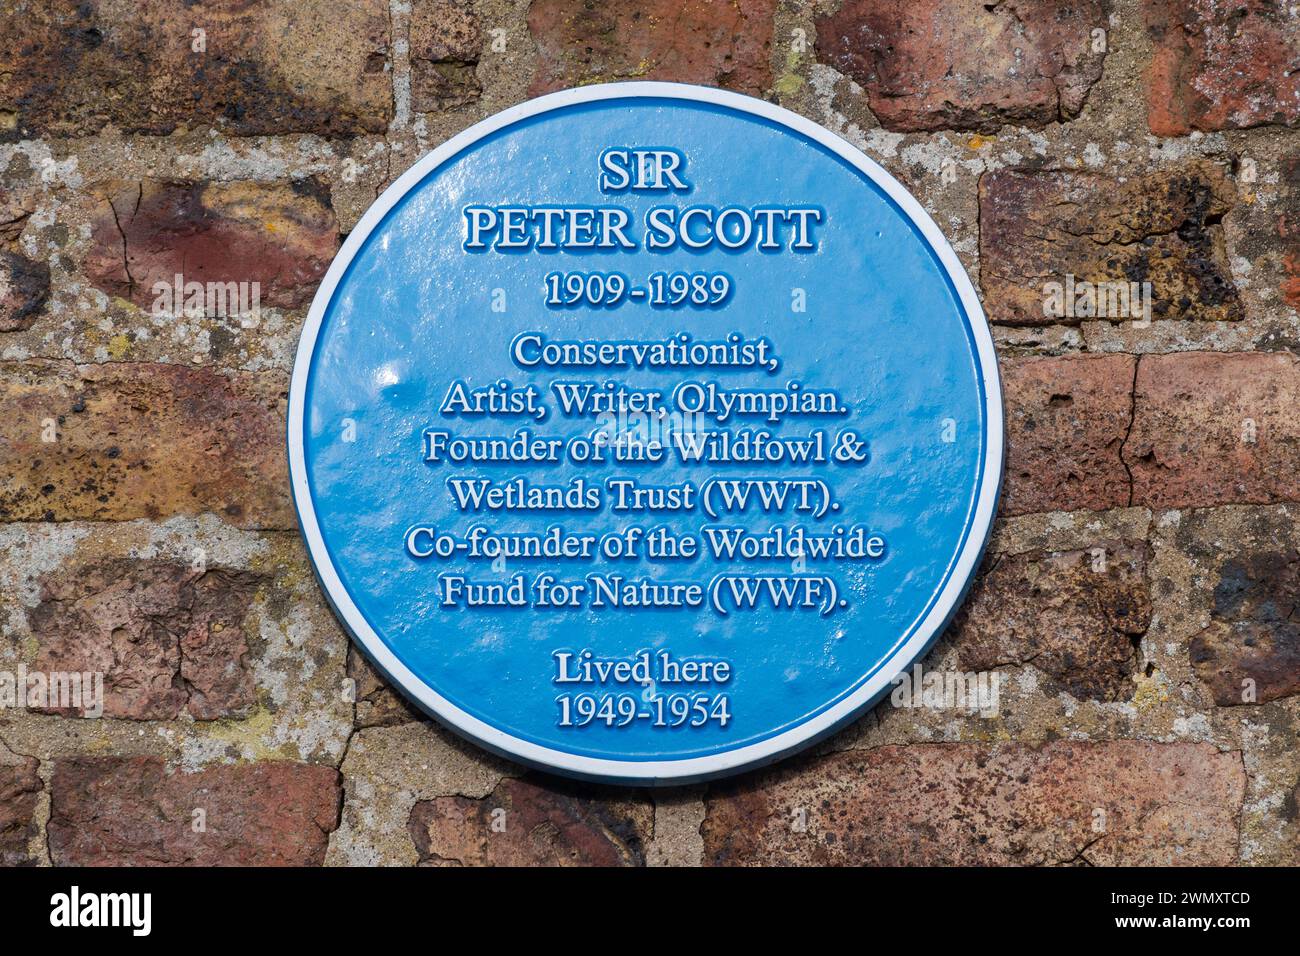 Blue plaque Sir Peter Scott a vécu ici sur un chalet au WWT Slimbridge Wetland Centre, Gloucestershire, Angleterre, Royaume-Uni Banque D'Images